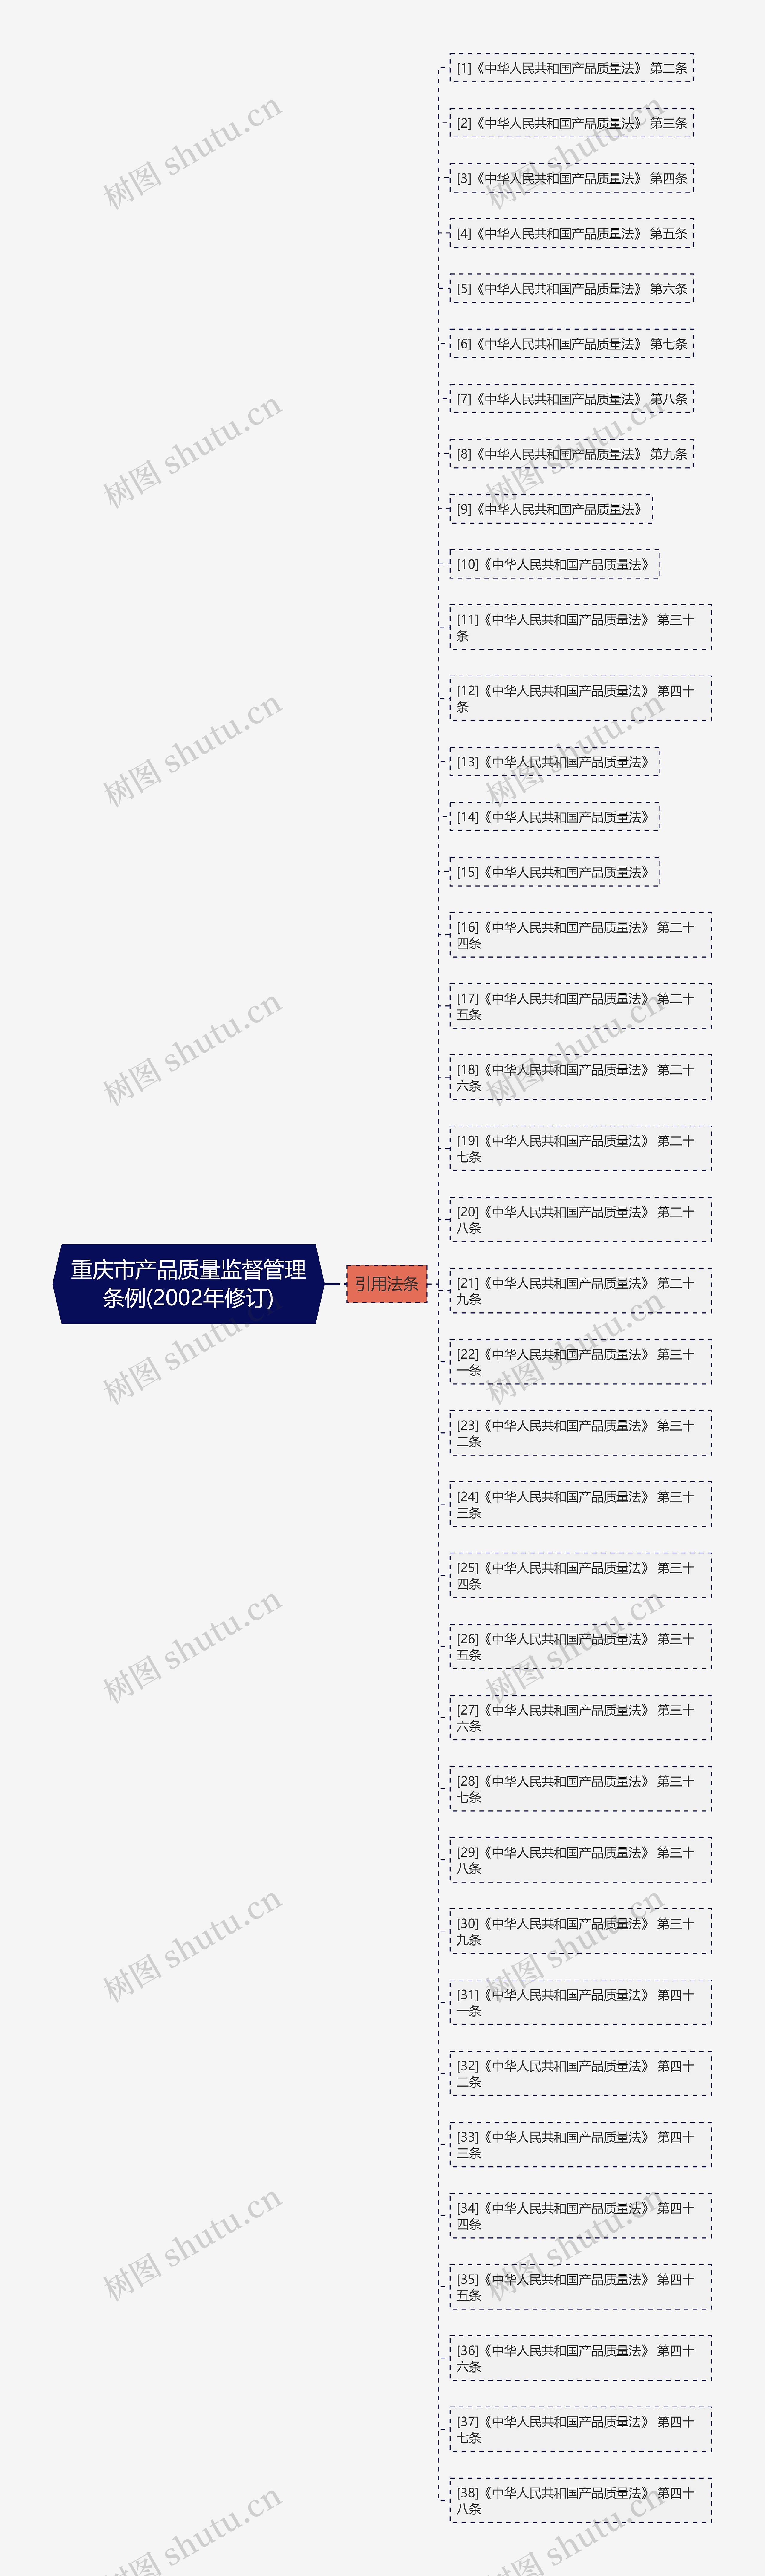 重庆市产品质量监督管理条例(2002年修订)思维导图